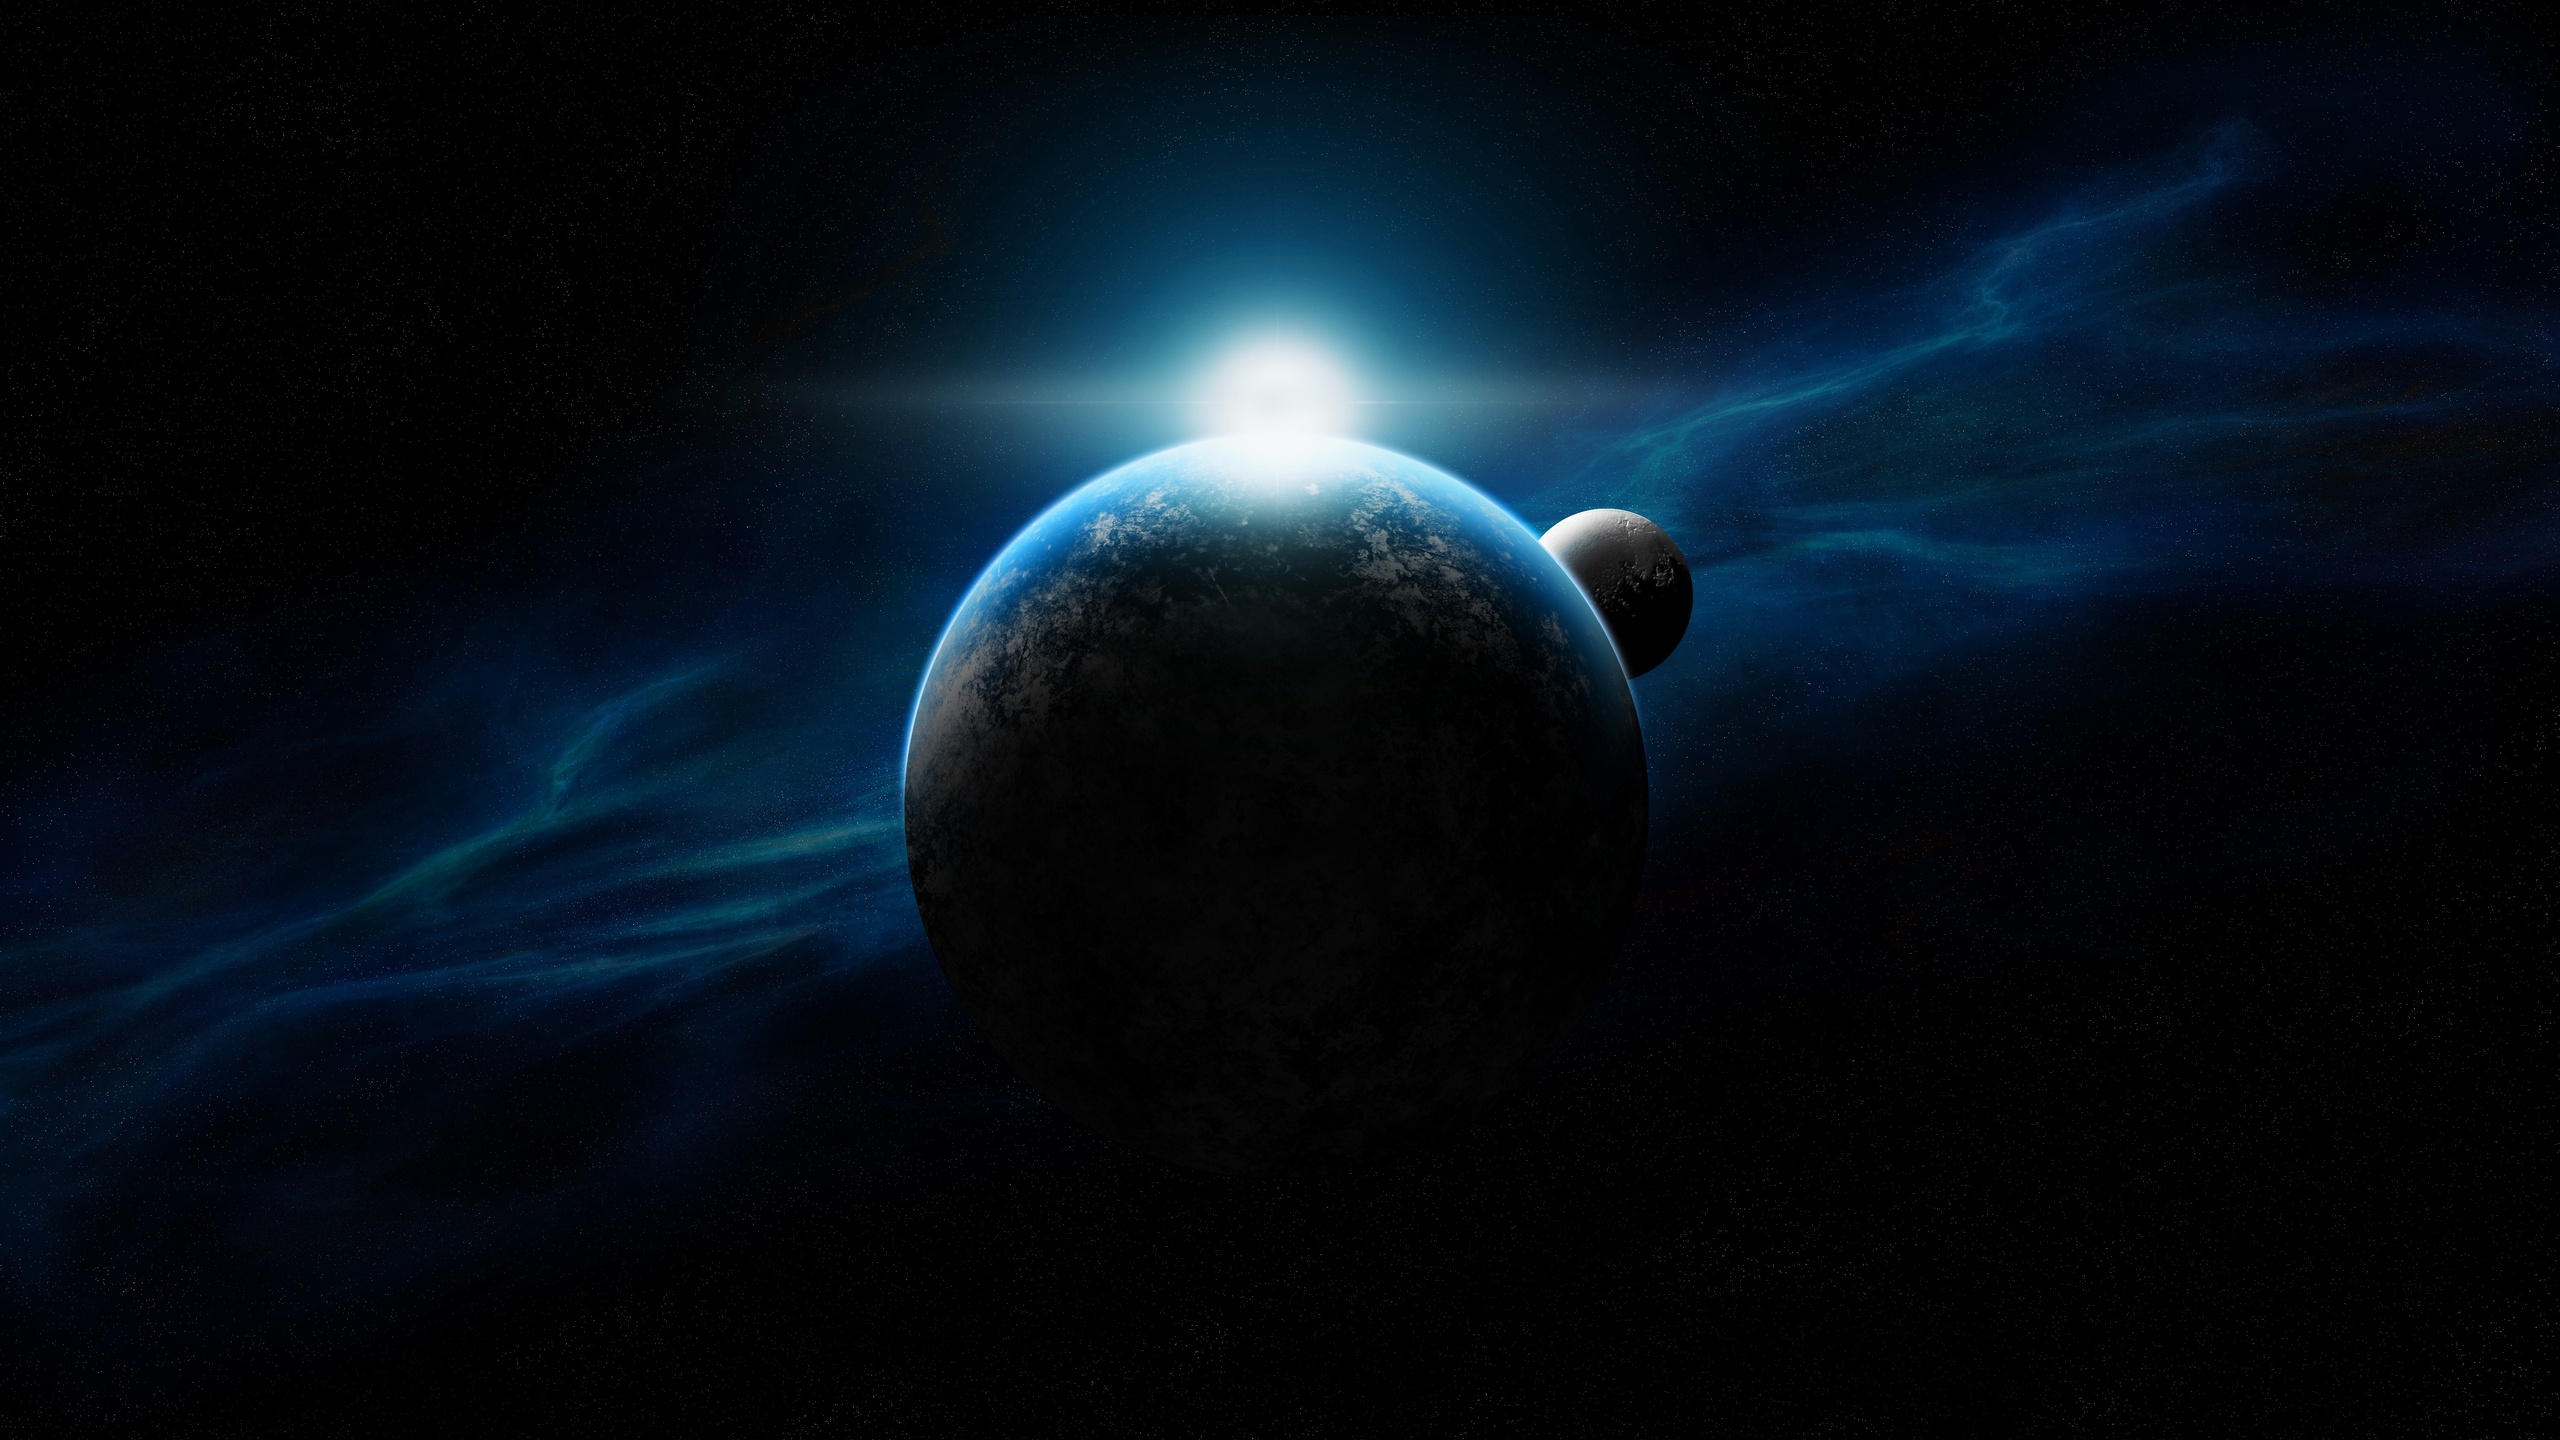 تصویر گرافیکی جادویی سیاره در فضا با کیفیت HD